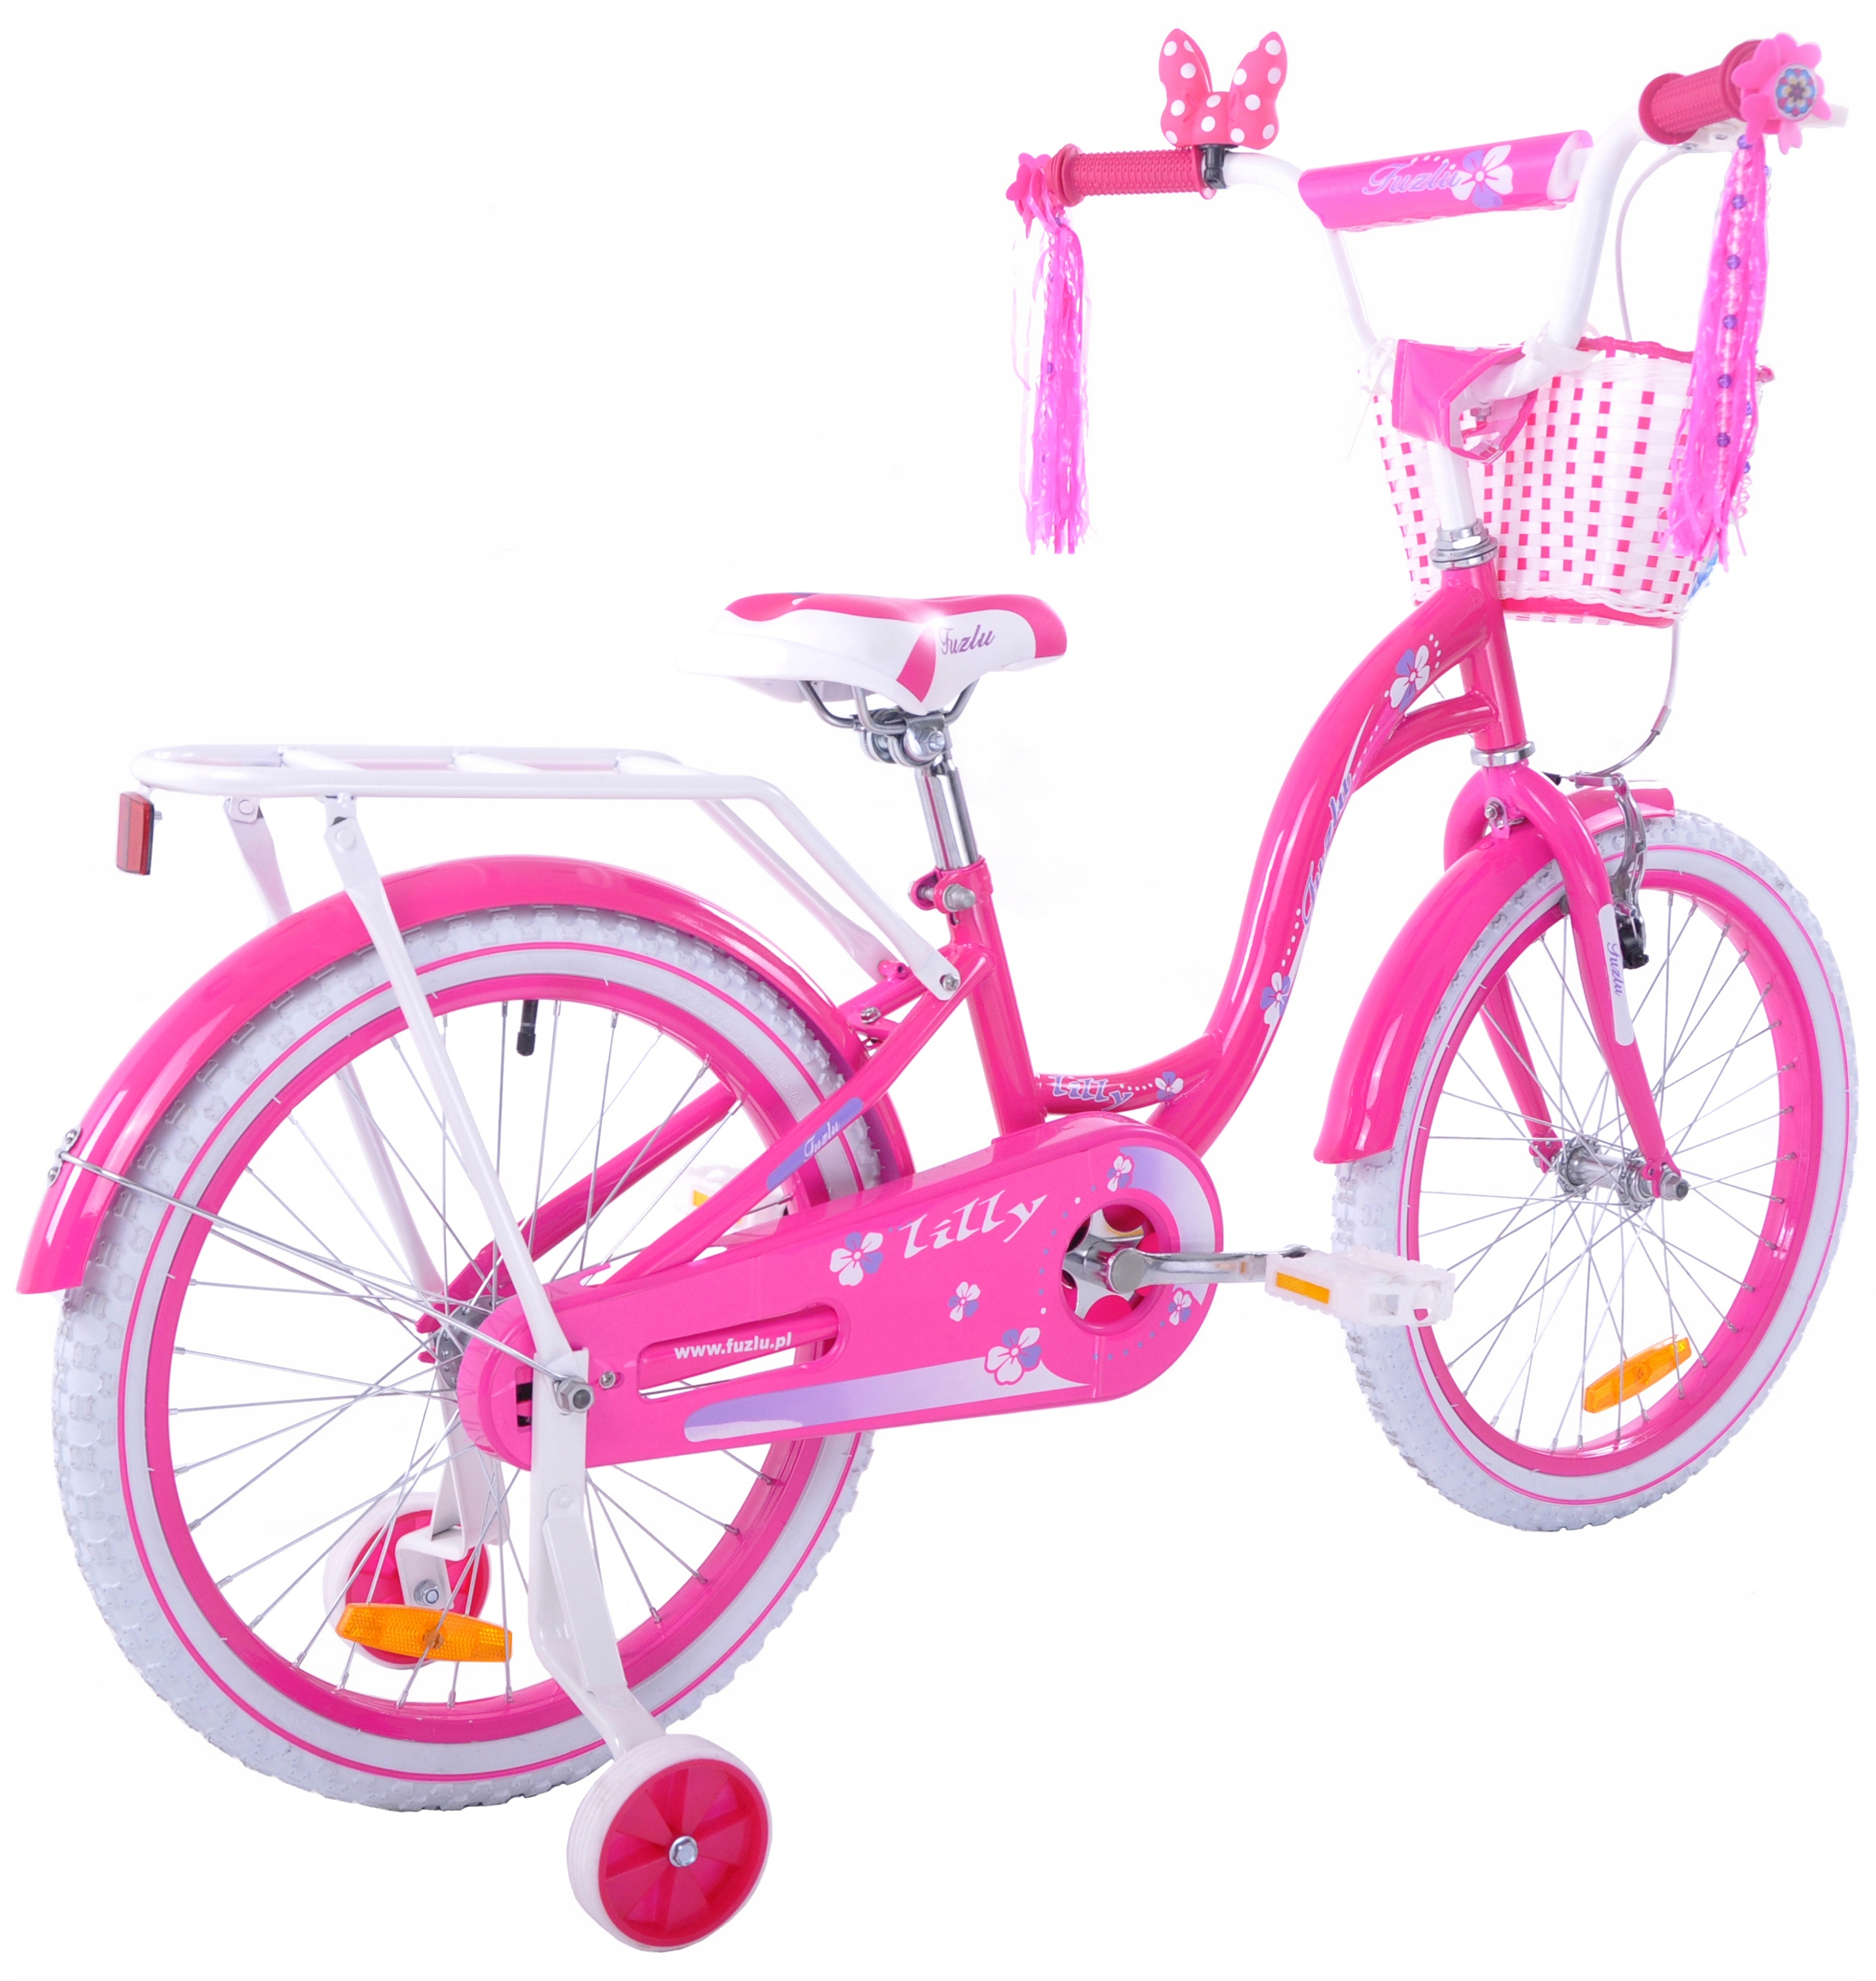 Велосипед для девочек купить авито. Велосипед для девочки. Велосипед для девочки 7 лет. Велосипед розовый для девочки 5 лет. Велосипед для девочки 8 лет.